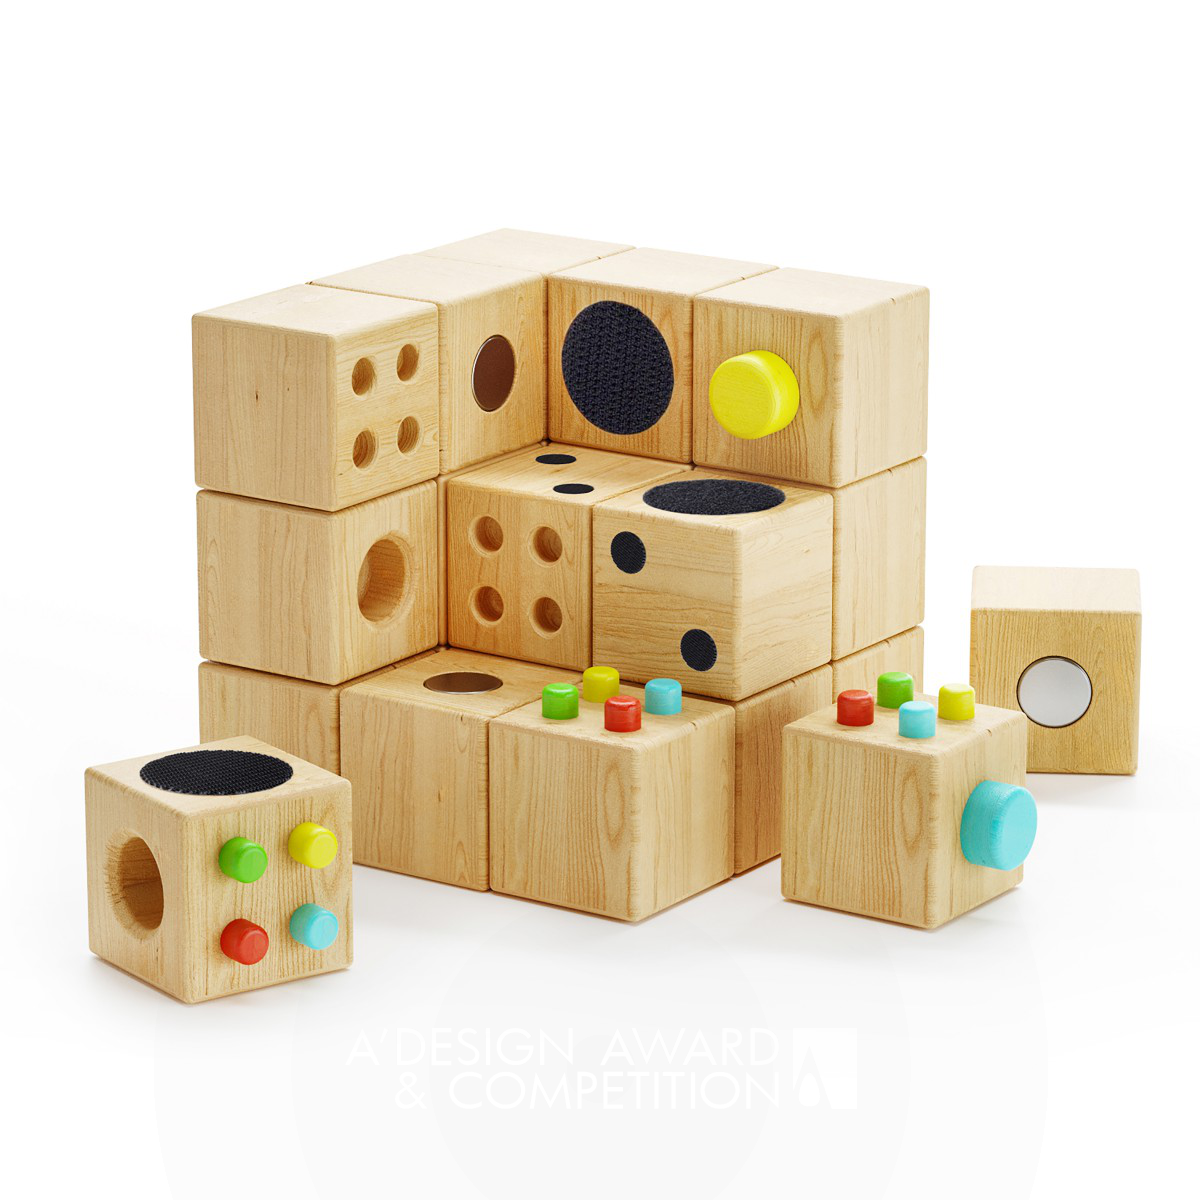 Cubecor: Een Houten Bouwspeelgoed dat Creativiteit en Verbeelding Stimuleert